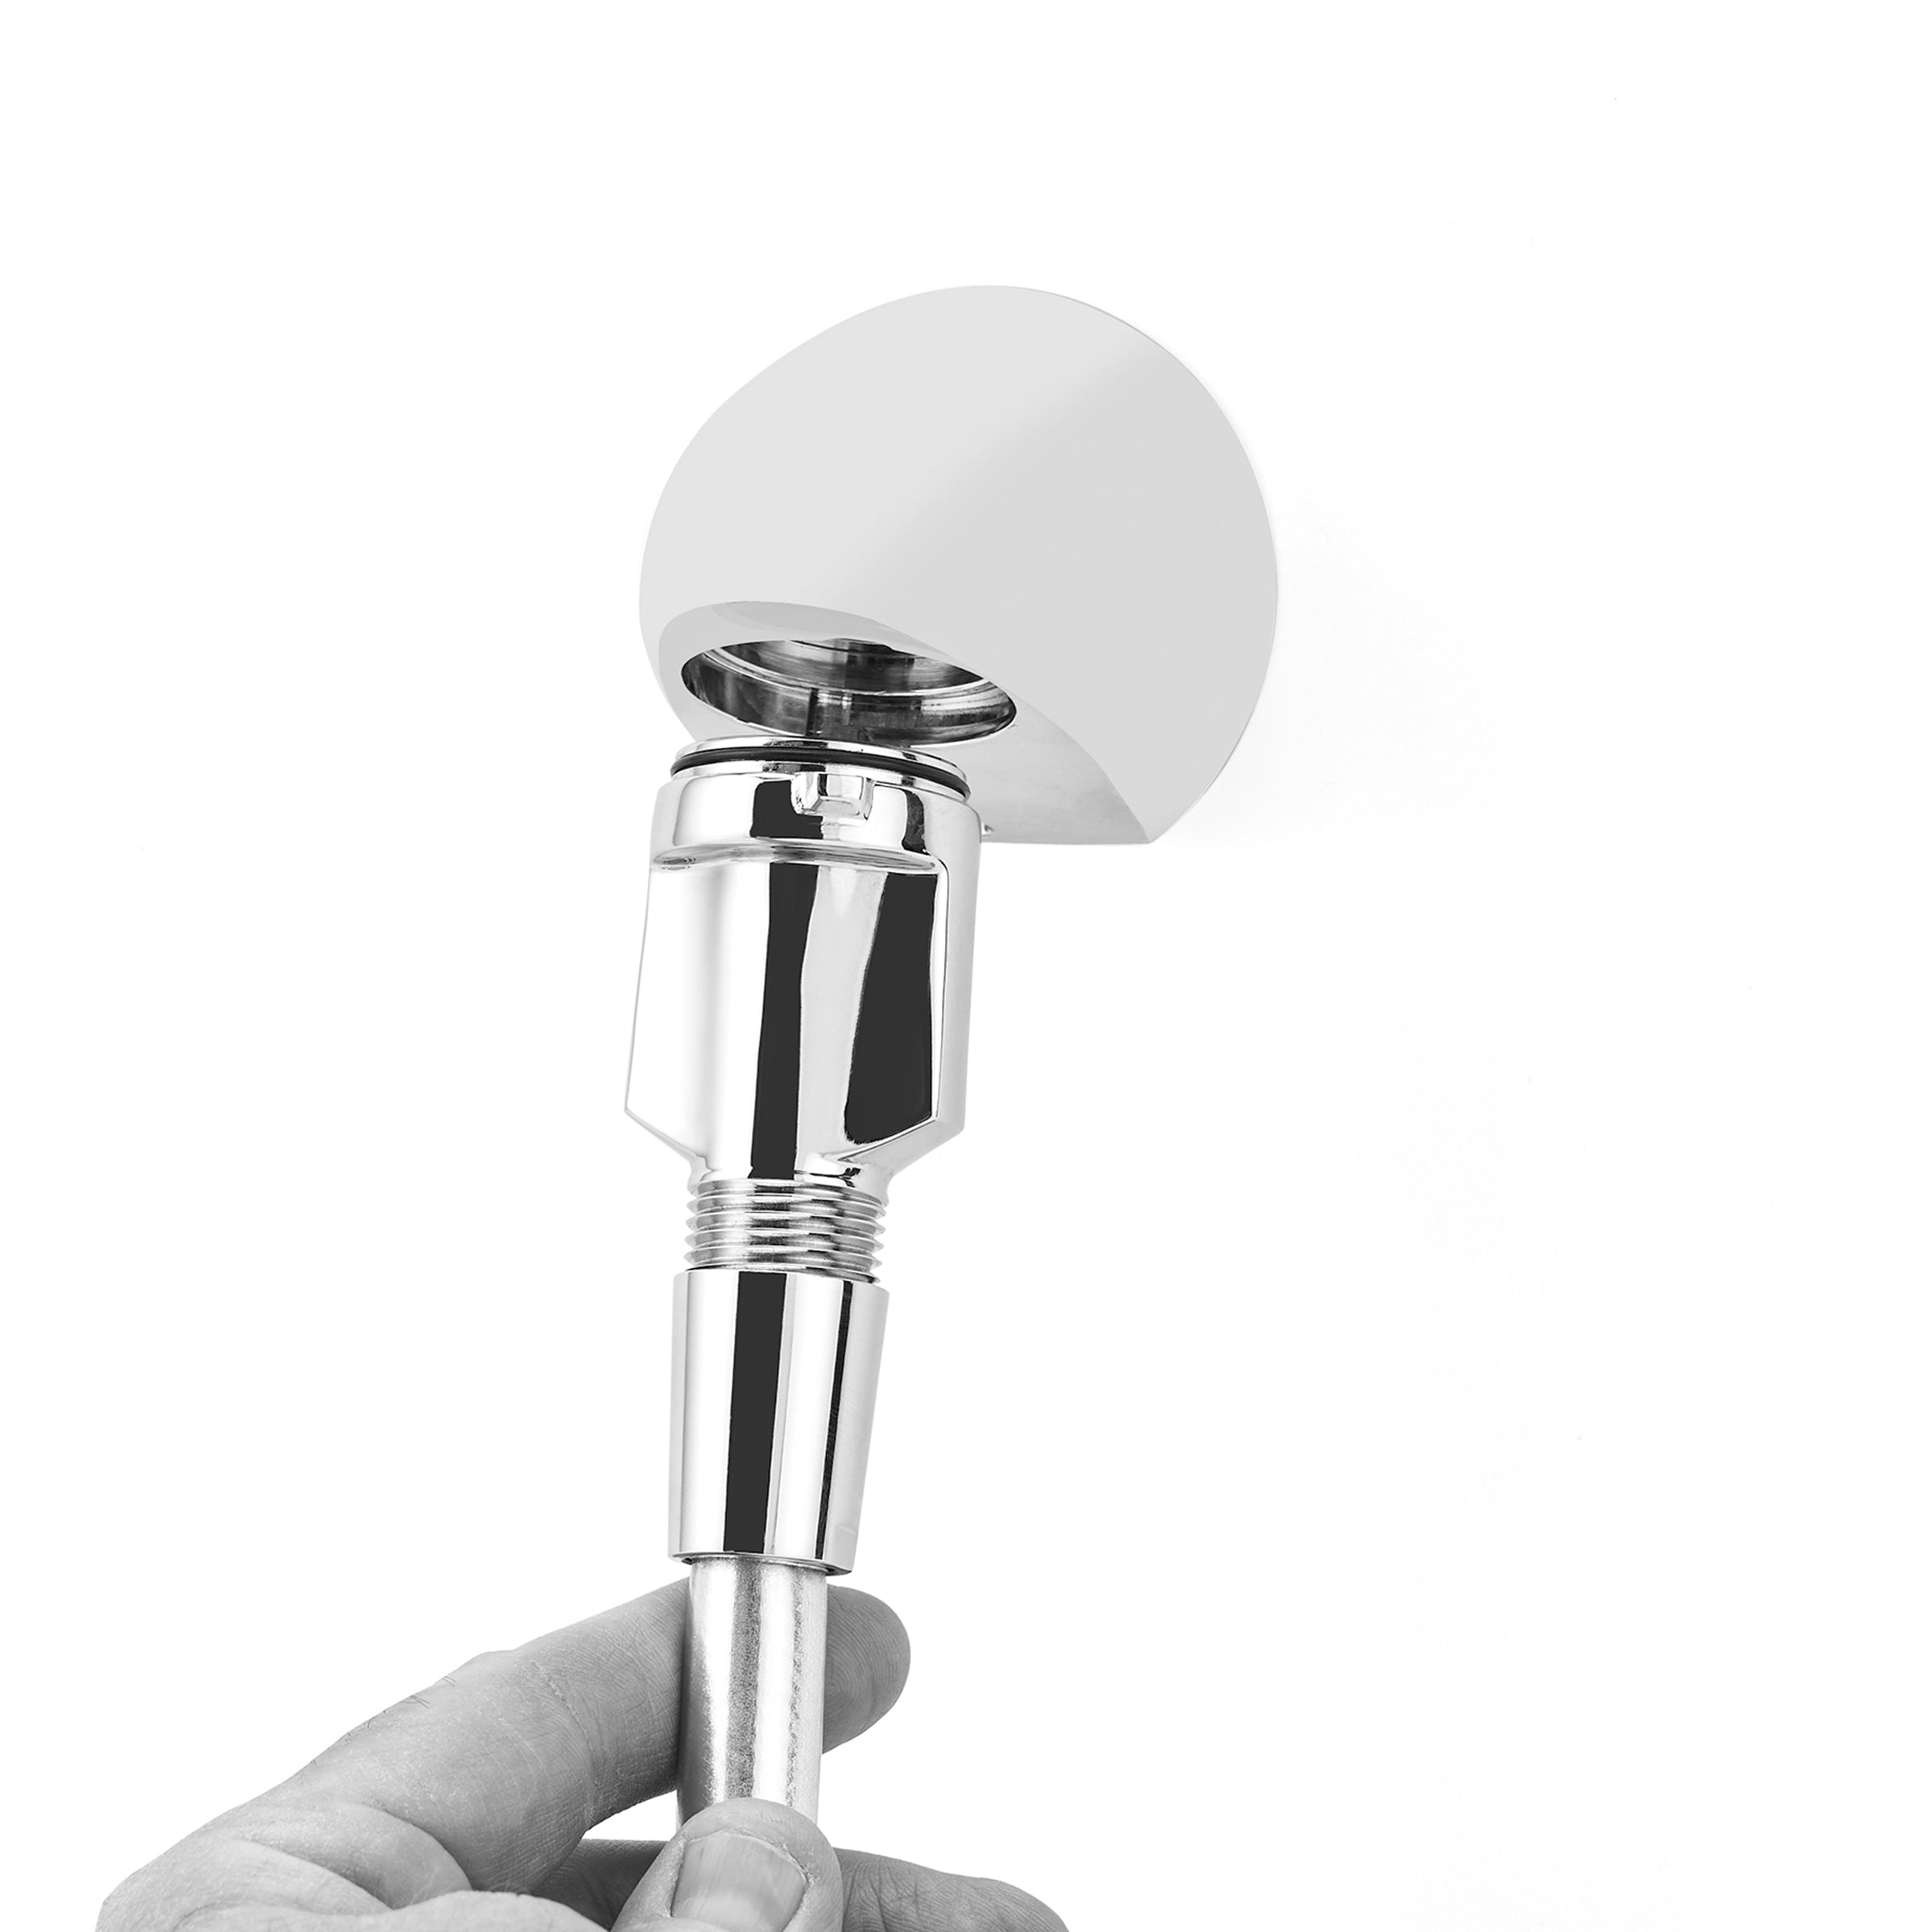 LRSCOM - Combo anti-Ligature Shower Head and Handheld Shower